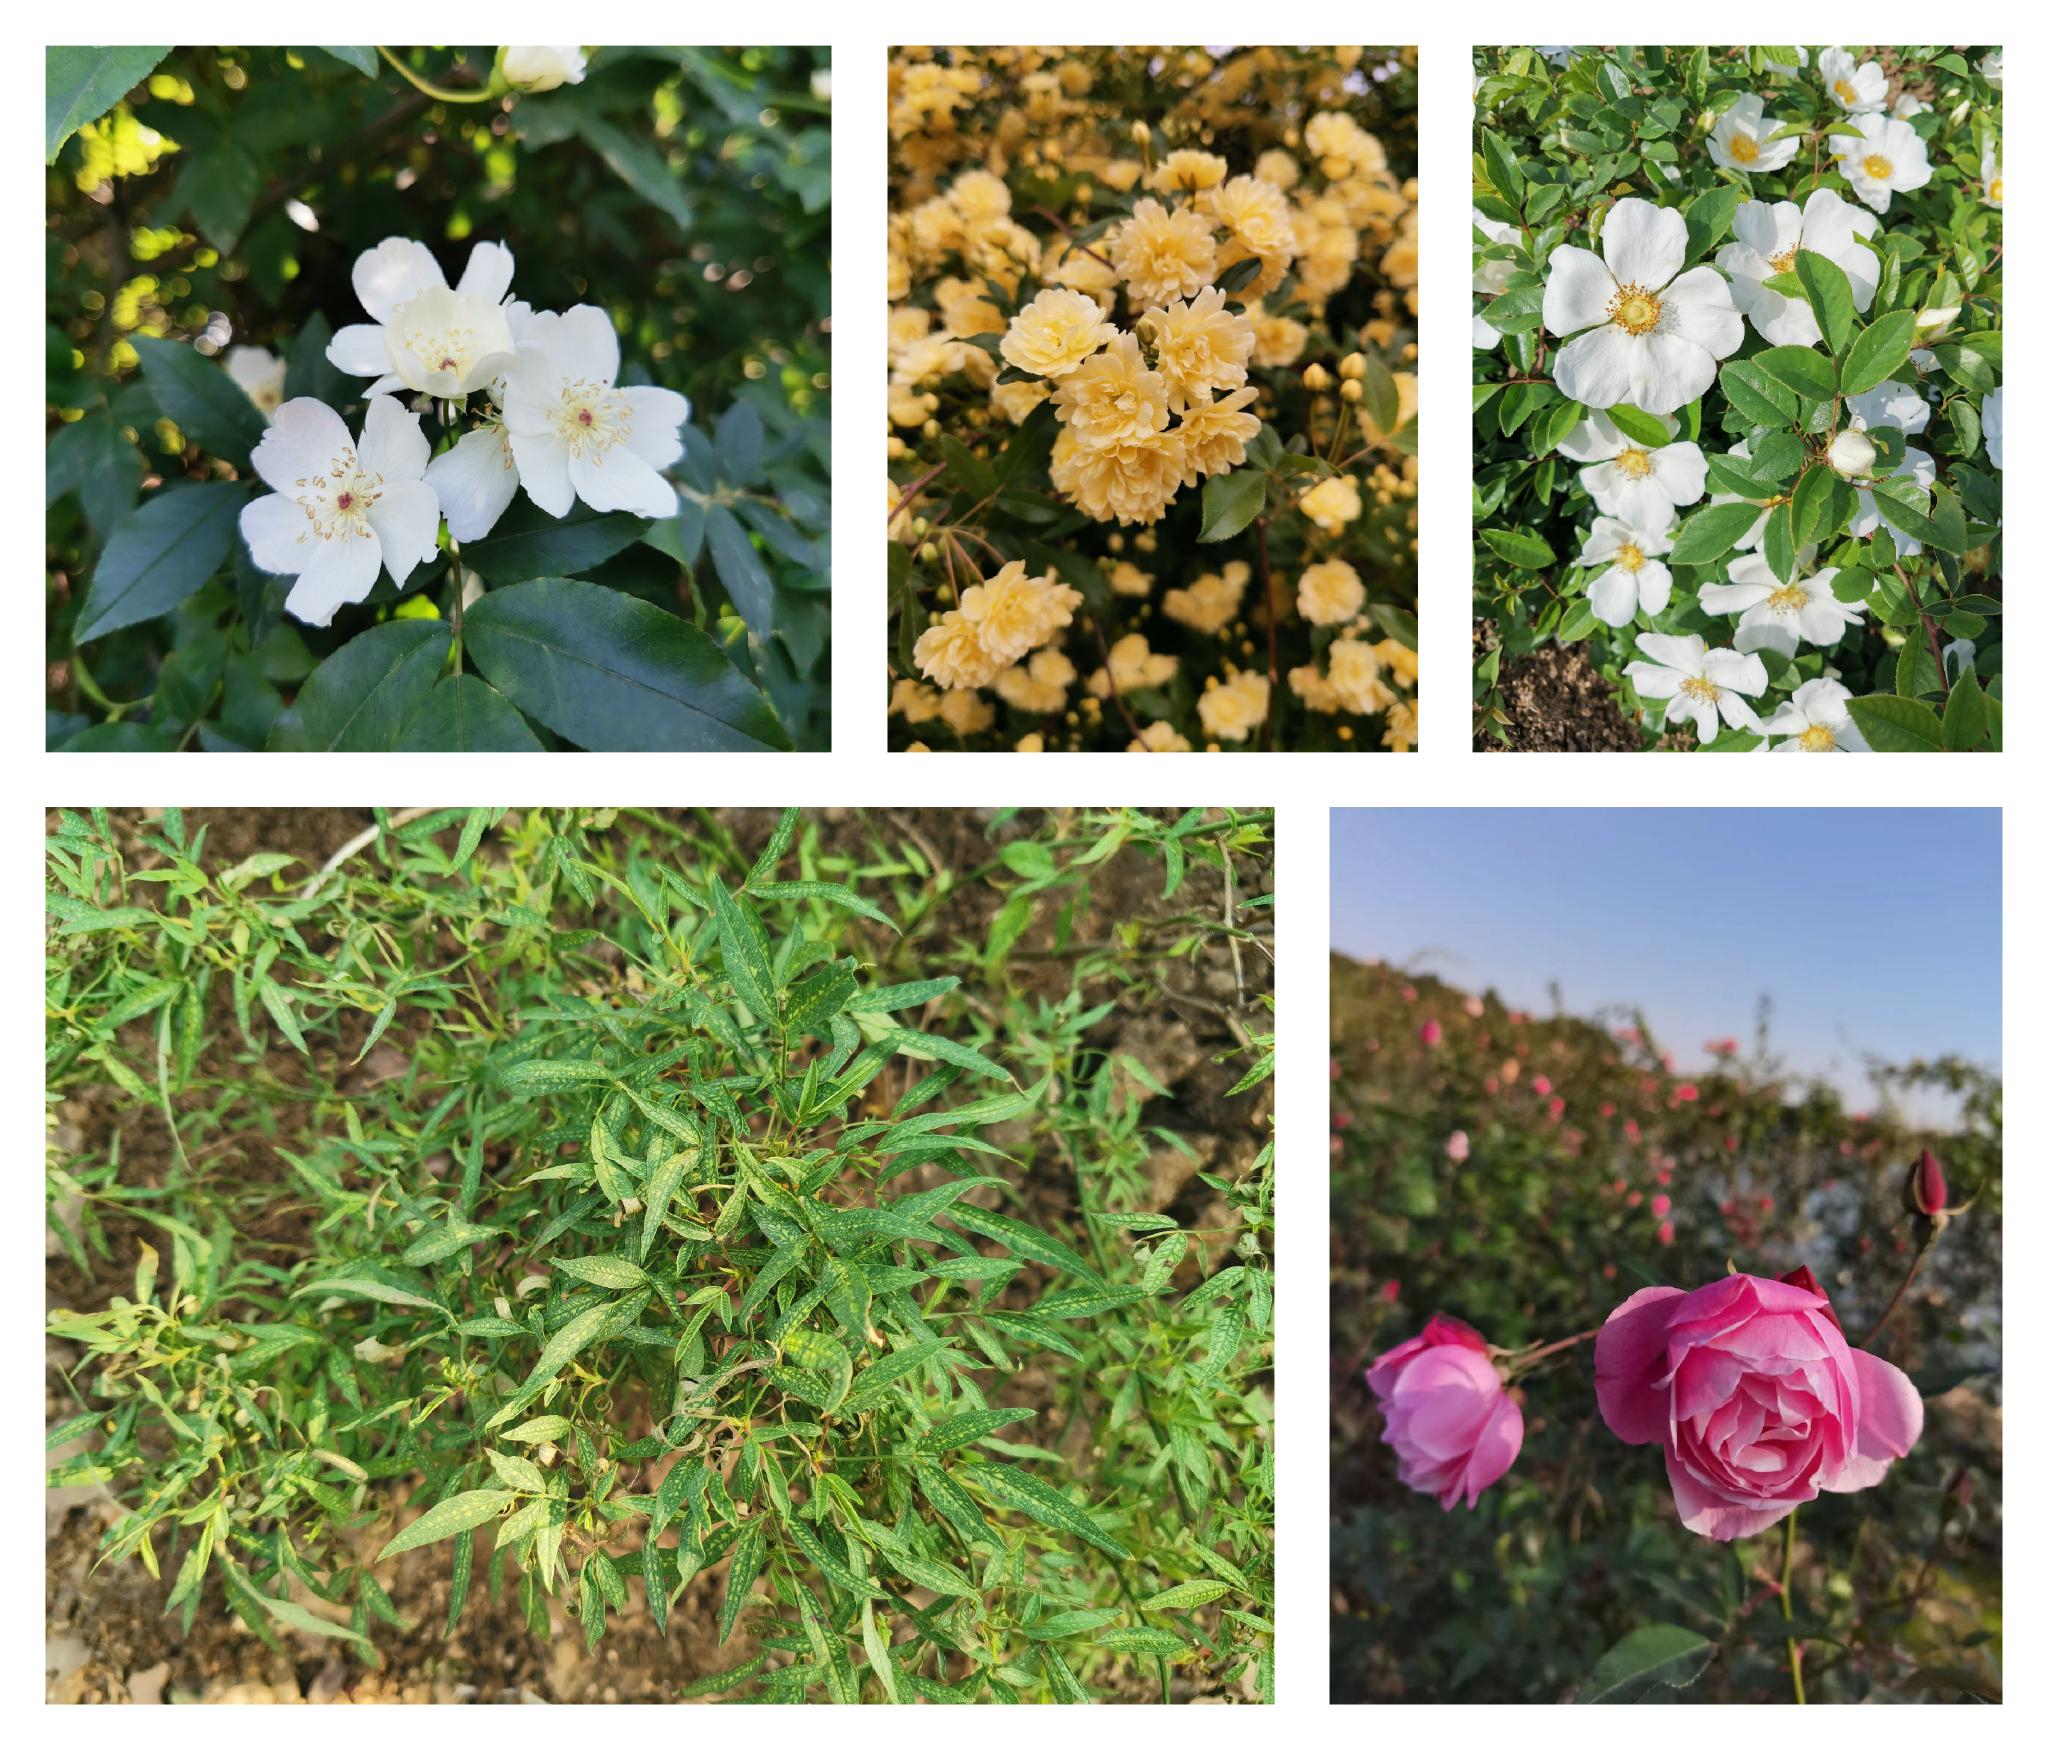 从左至右：白木香、黄木香、金樱子、柳叶蔷薇、月月粉  图片来源：辰山植物园